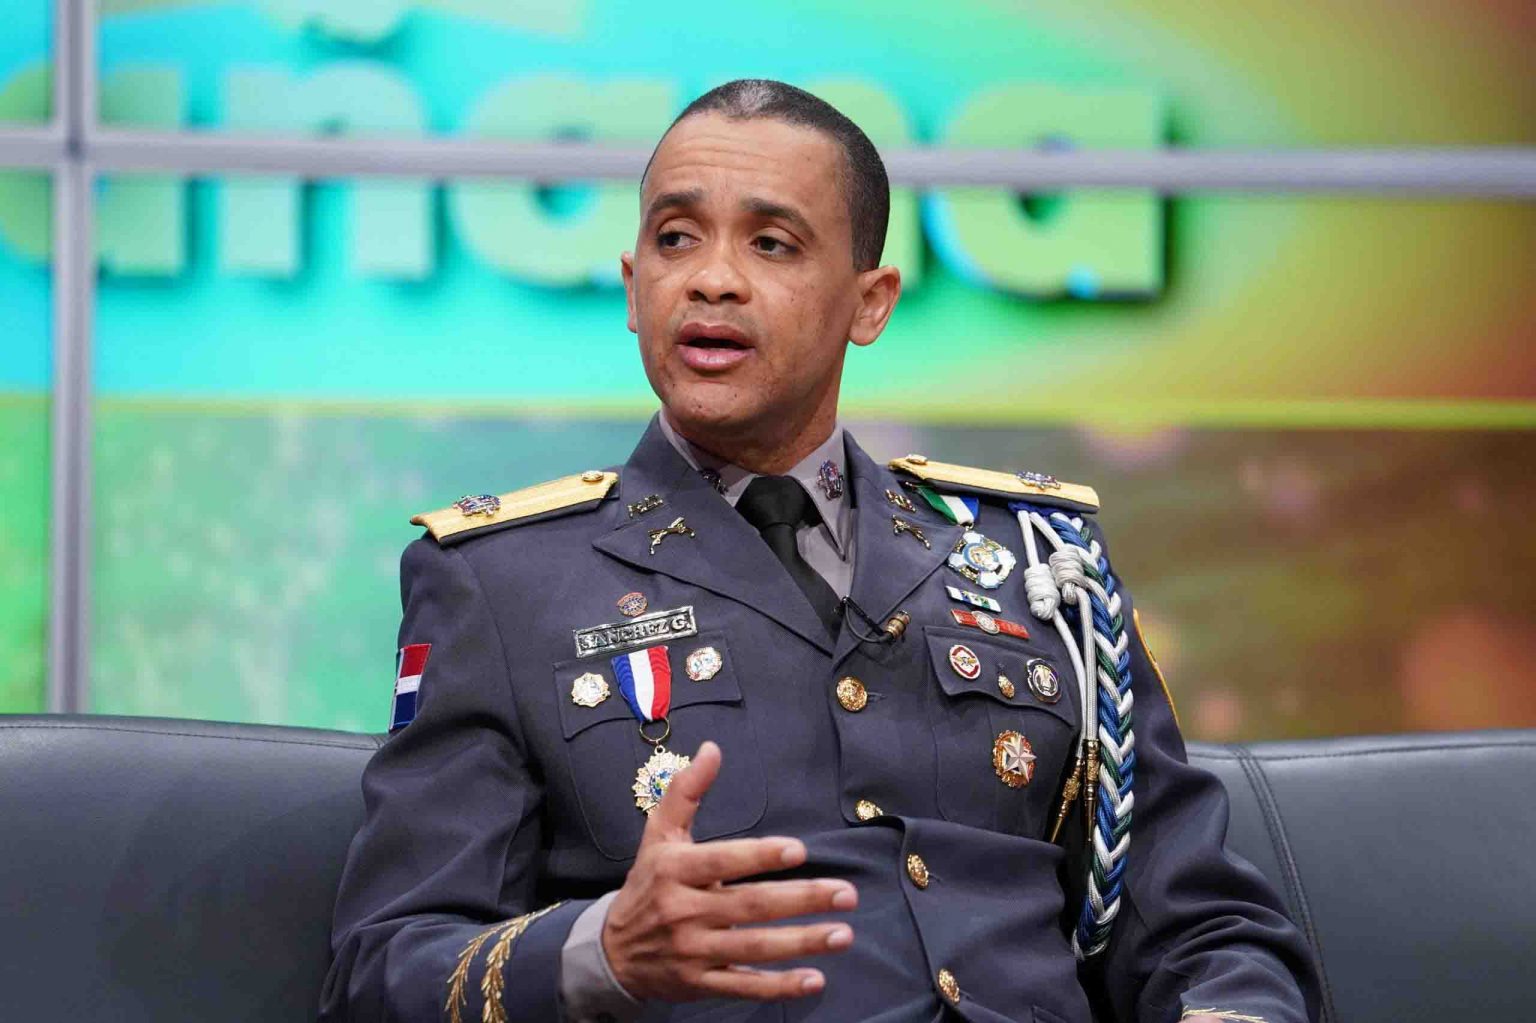 General Edward Sanchez Gonzalez